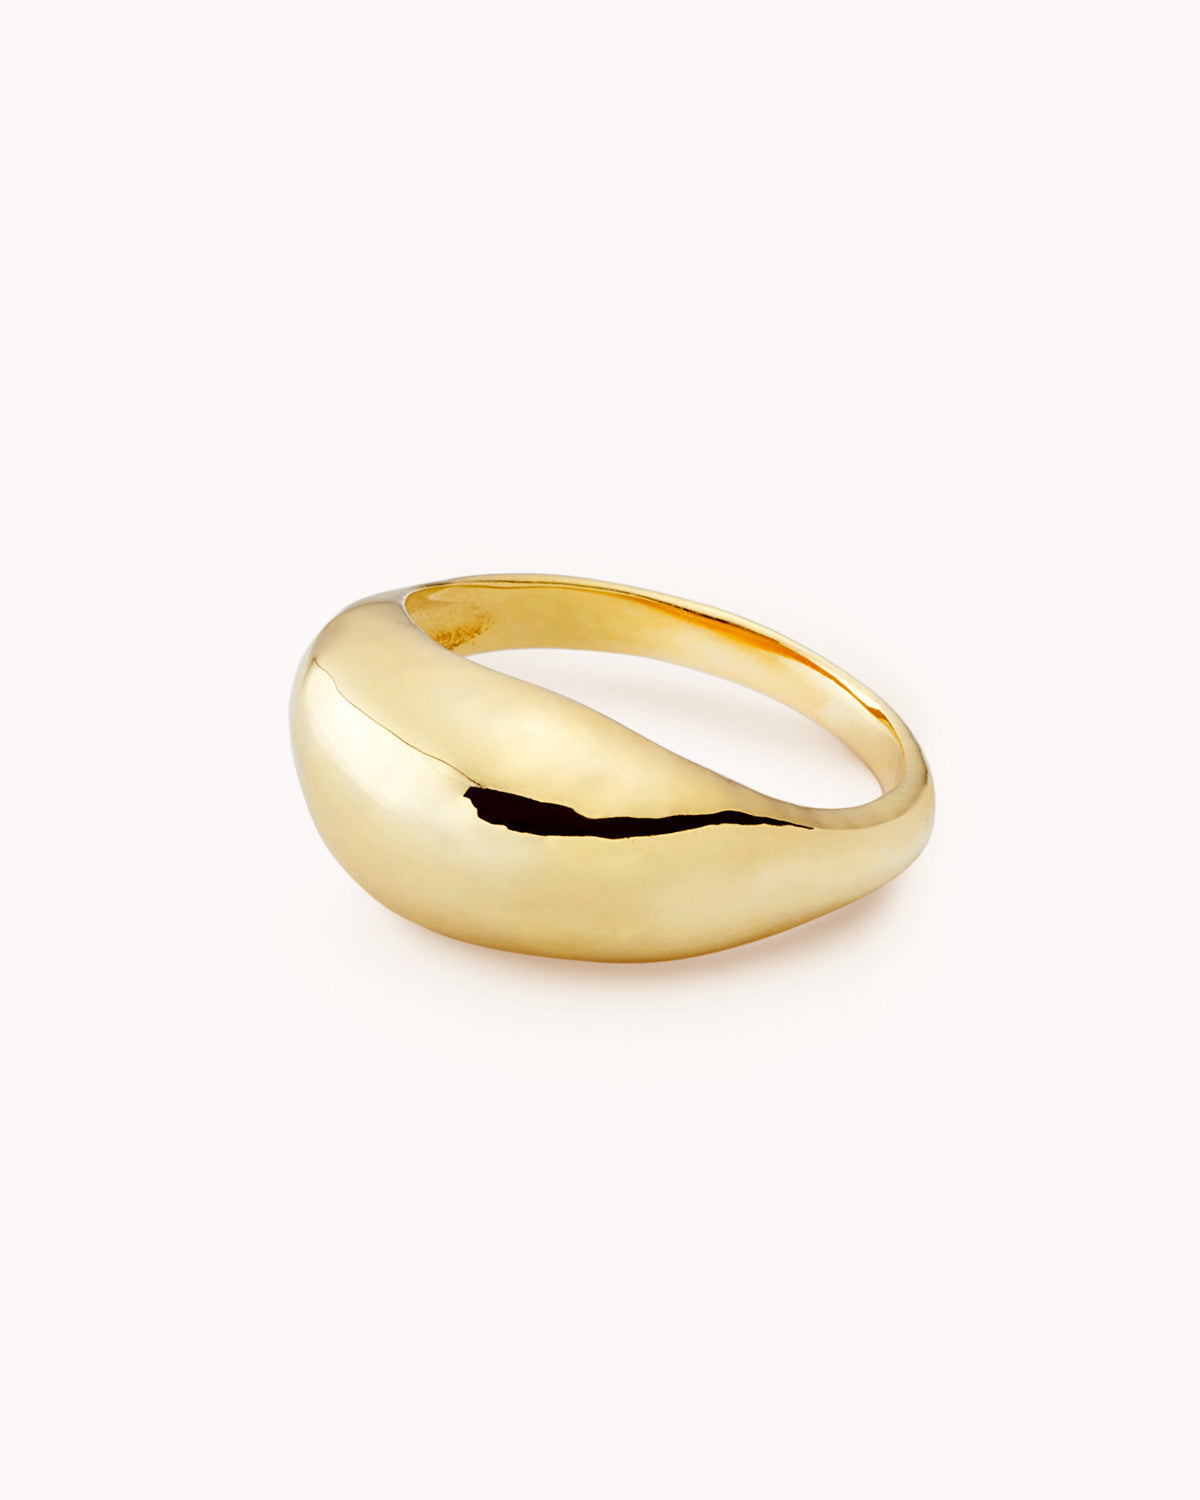 Anel irregular grosso dourado - Anéis - OUR SINS